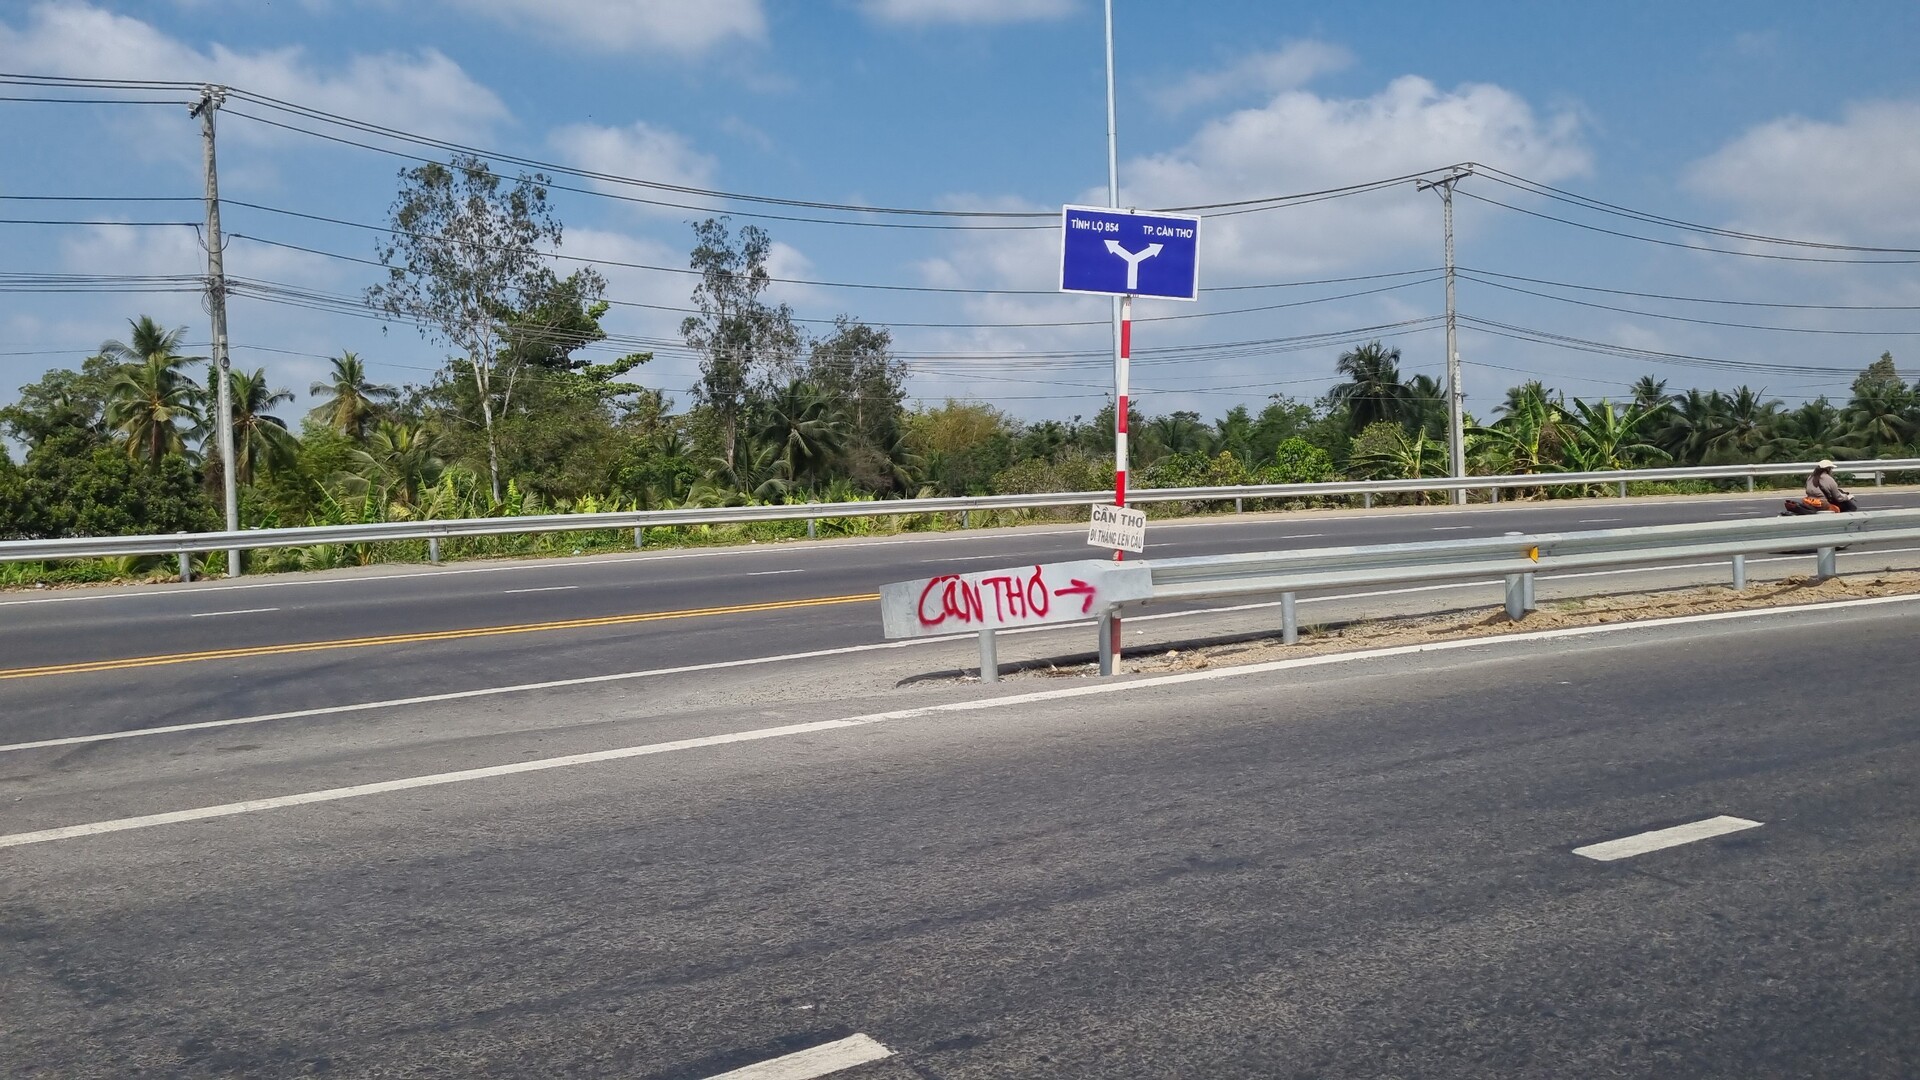 Tấm biển phụ được gắn dọc theo đường dẫn từ thị xã Bình Minh lên cầu Chà Và, tại đây có 2 nhánh đường, nếu không chú ý, người đi đường muốn về Cần Thơ lại đi lạc sang đường tỉnh 854 về Đồng Tháp.